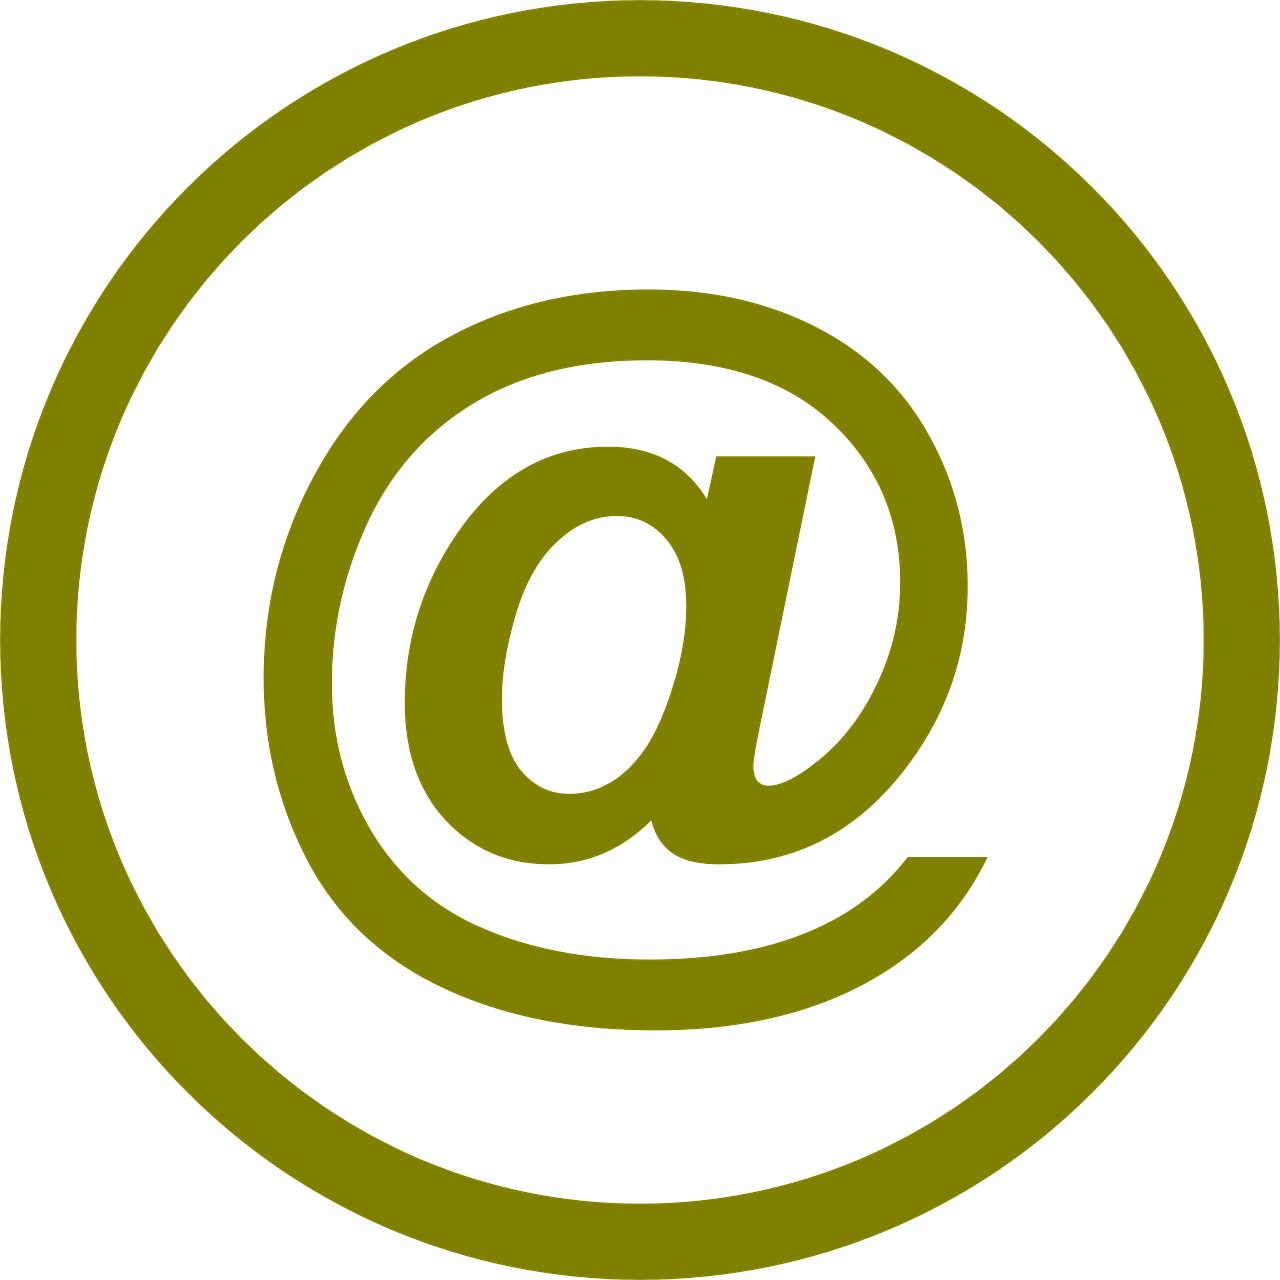 Simbolis, Elektroninis Paštas, At, Elektroninis Paštas, Logotipas, Adresas, Internetas, Kompiuteris, Piktograma, Pranešimas